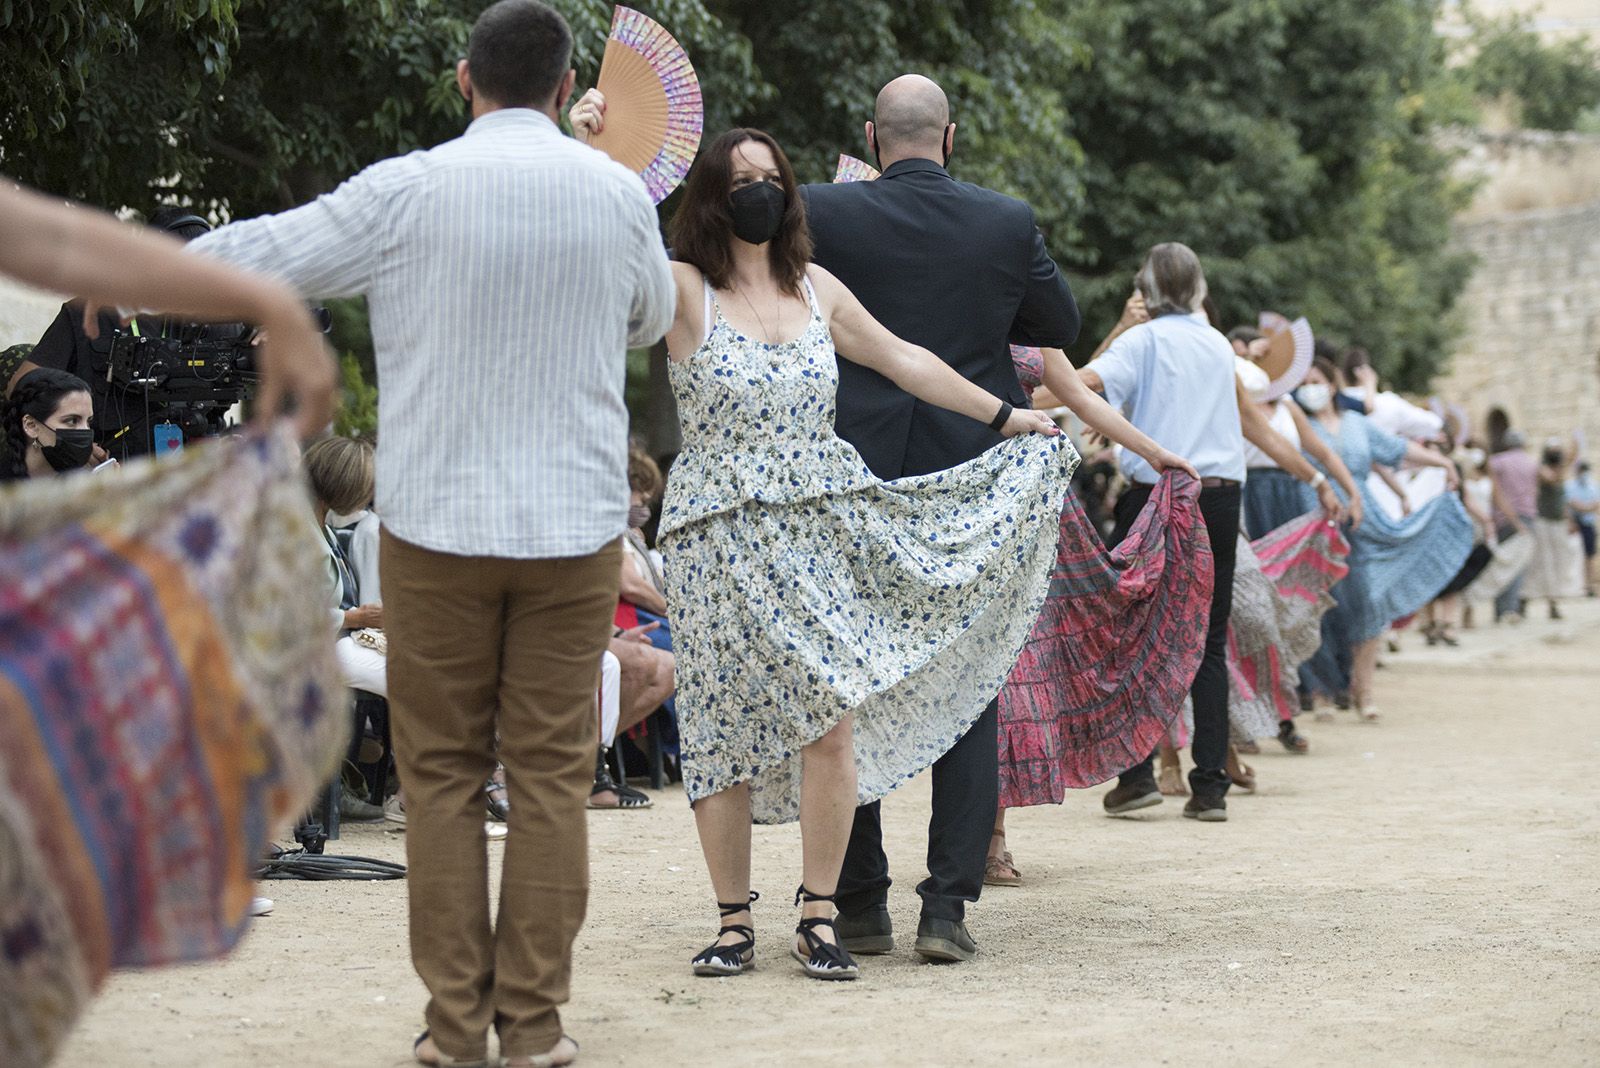 "Paga-li, Joan" ball del vano i el ram. Foto: Bernat Millet.